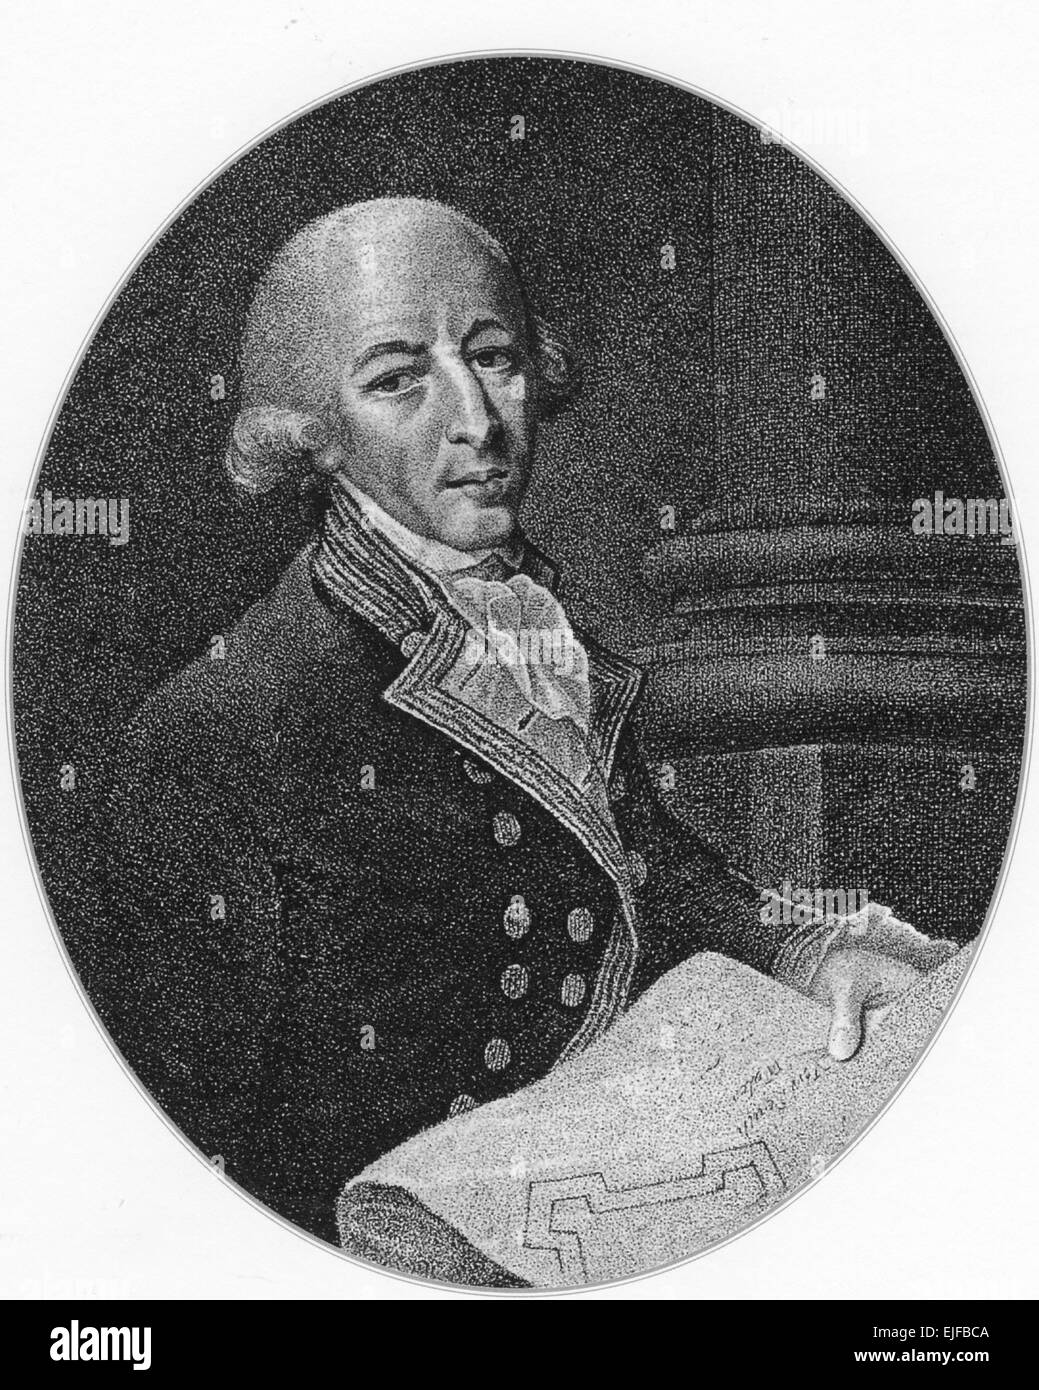 ARTHUR PHILIP (1738-1814) officier de la Royal Navy et premier gouverneur de la Nouvelle Galles du Sud Banque D'Images